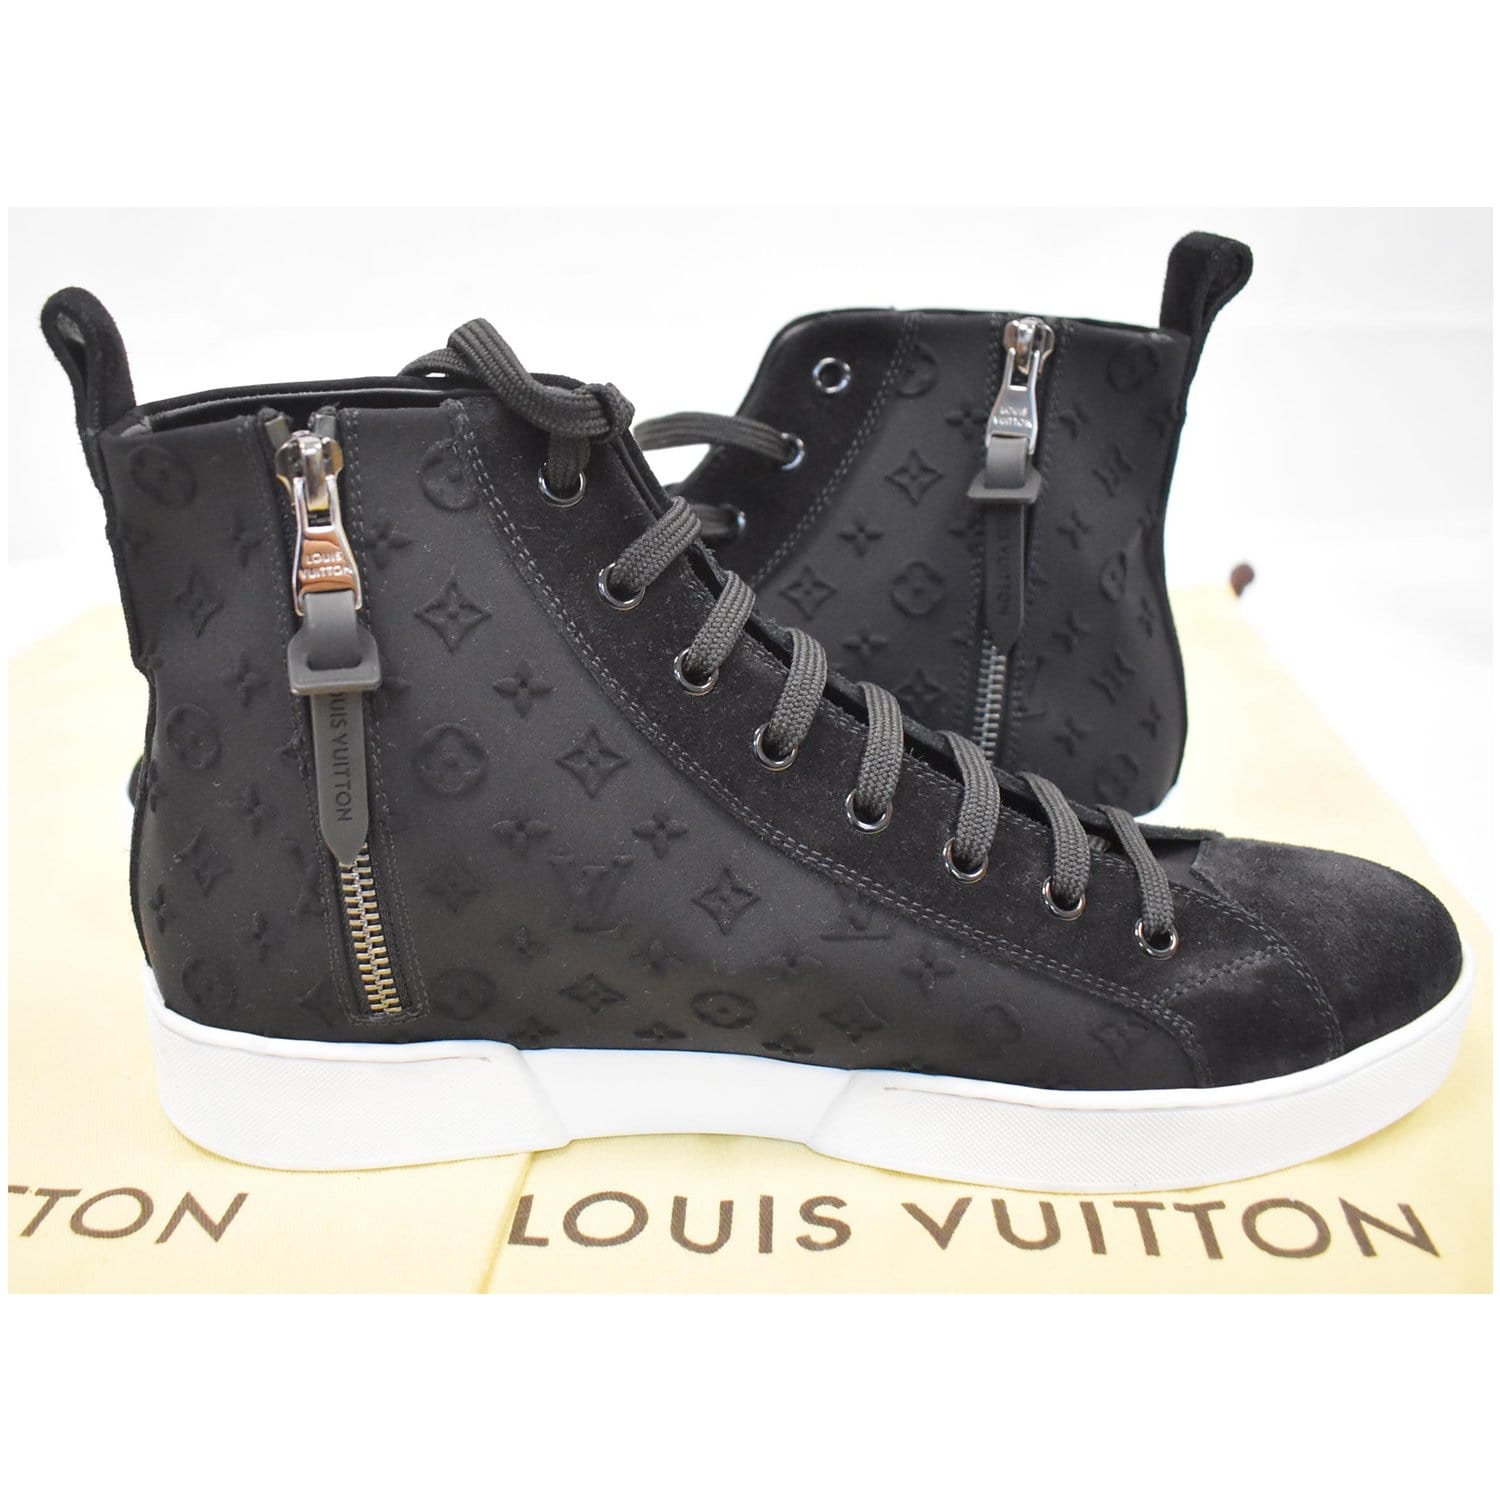 Louis Vuitton High Top Sneakers - Ciska: Smart online shopping